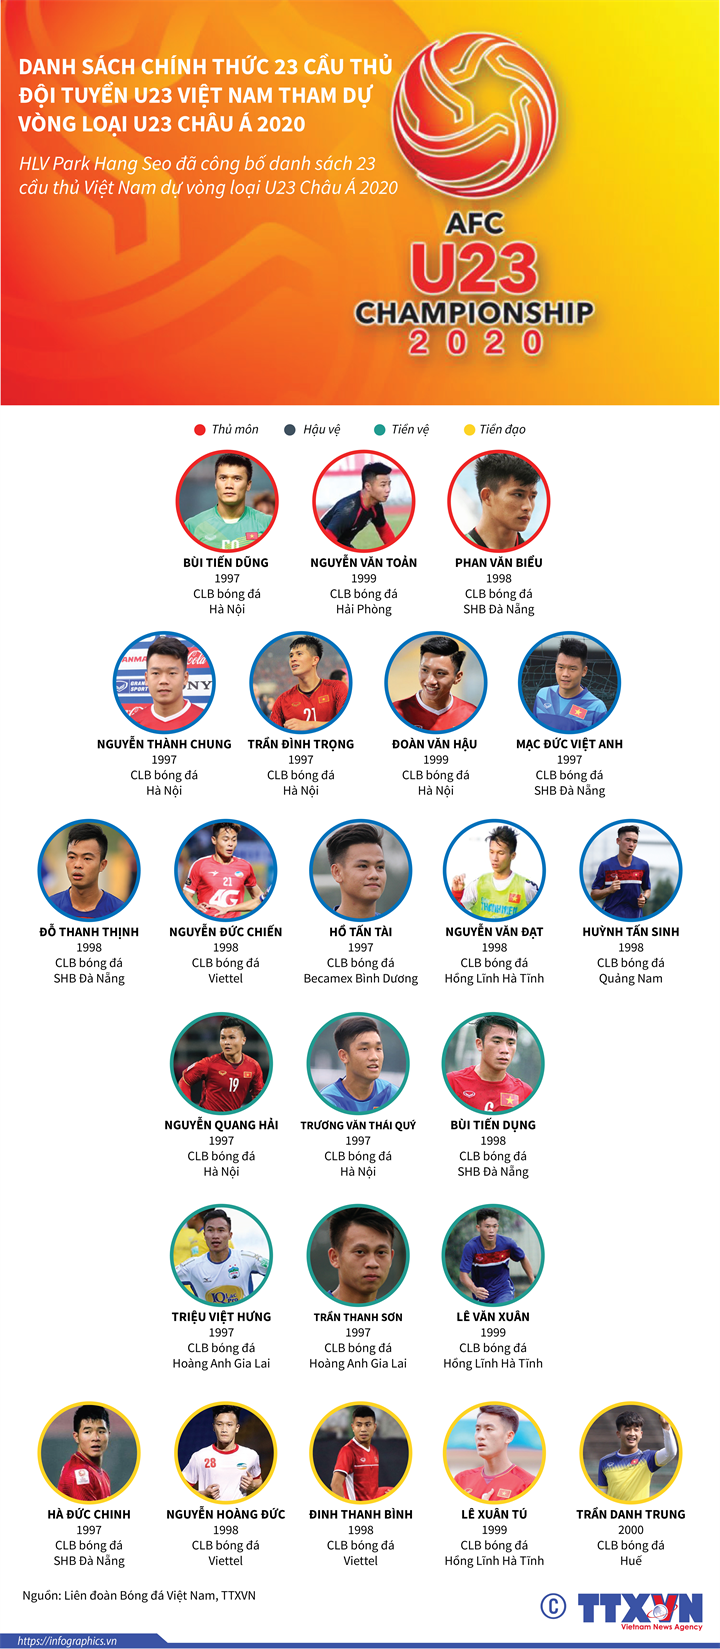 Danh sách chính thức 23 cầu thủ đội tuyển U23 Việt Nam tham dự vòng loại U23 Châu Á 2020